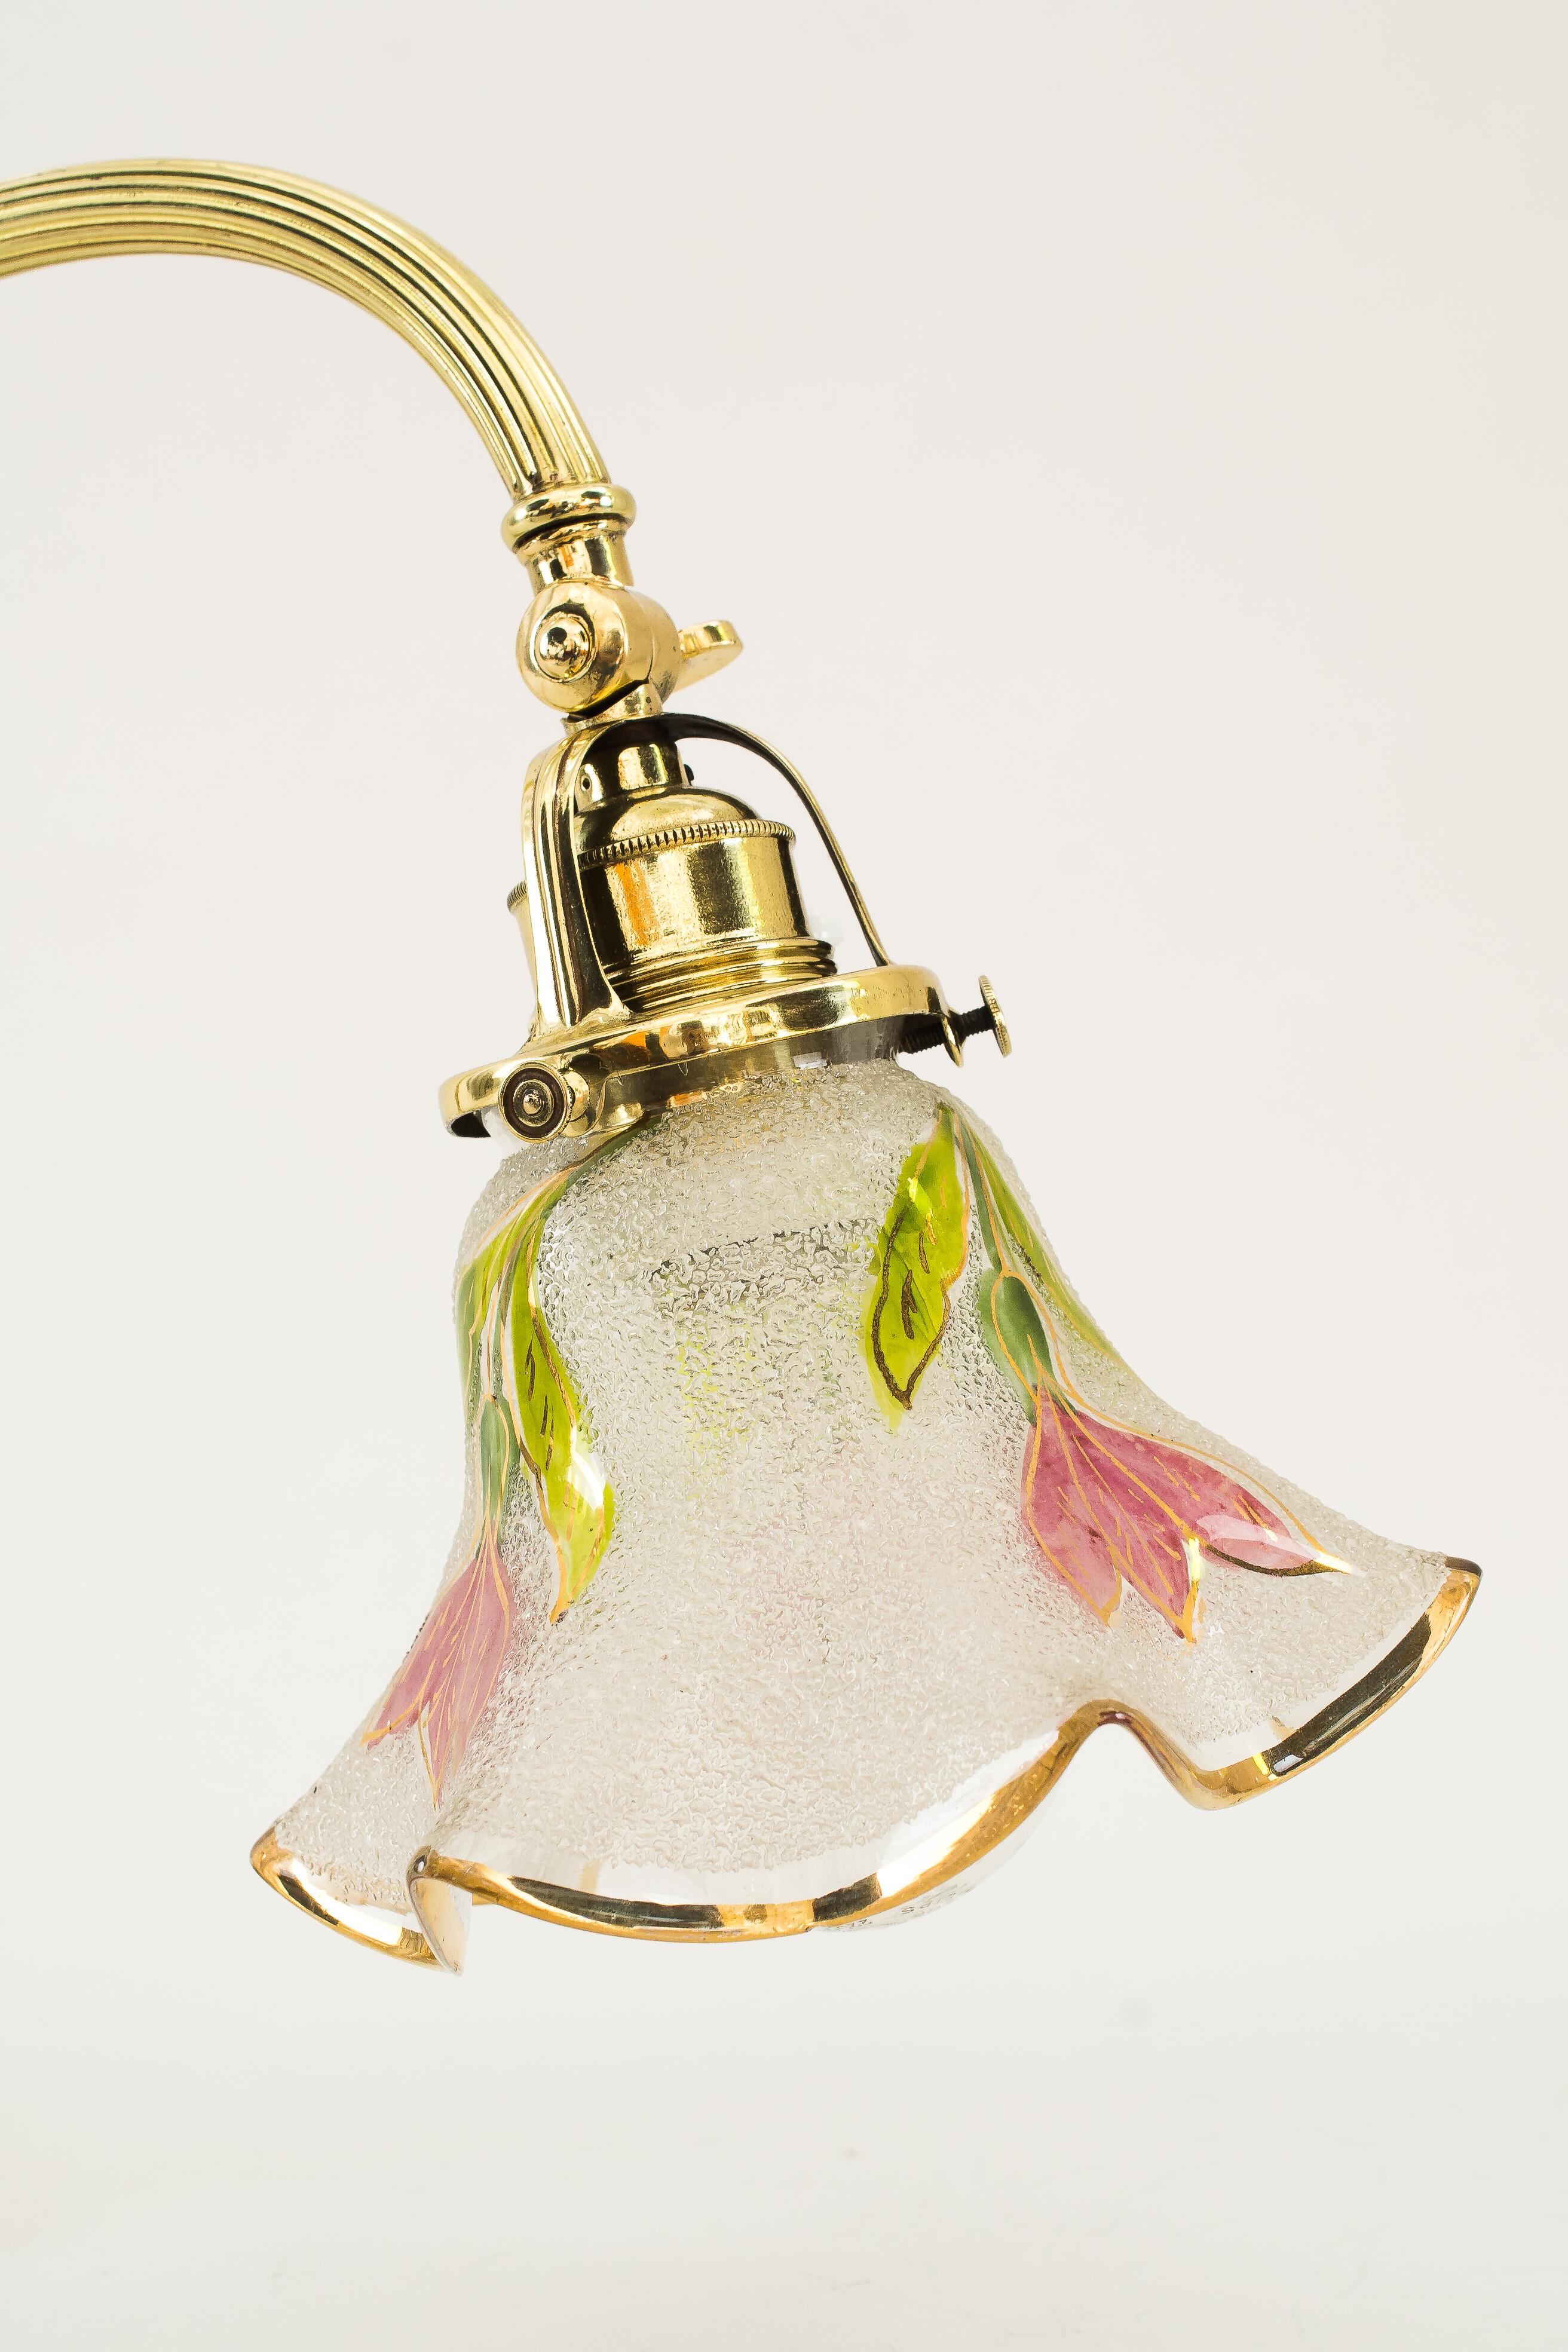 Jugendstil Klavierlampe mit original antikem Glasschirm wien um 1907
Poliert und einbrennlackiert
Original Glasschirm.